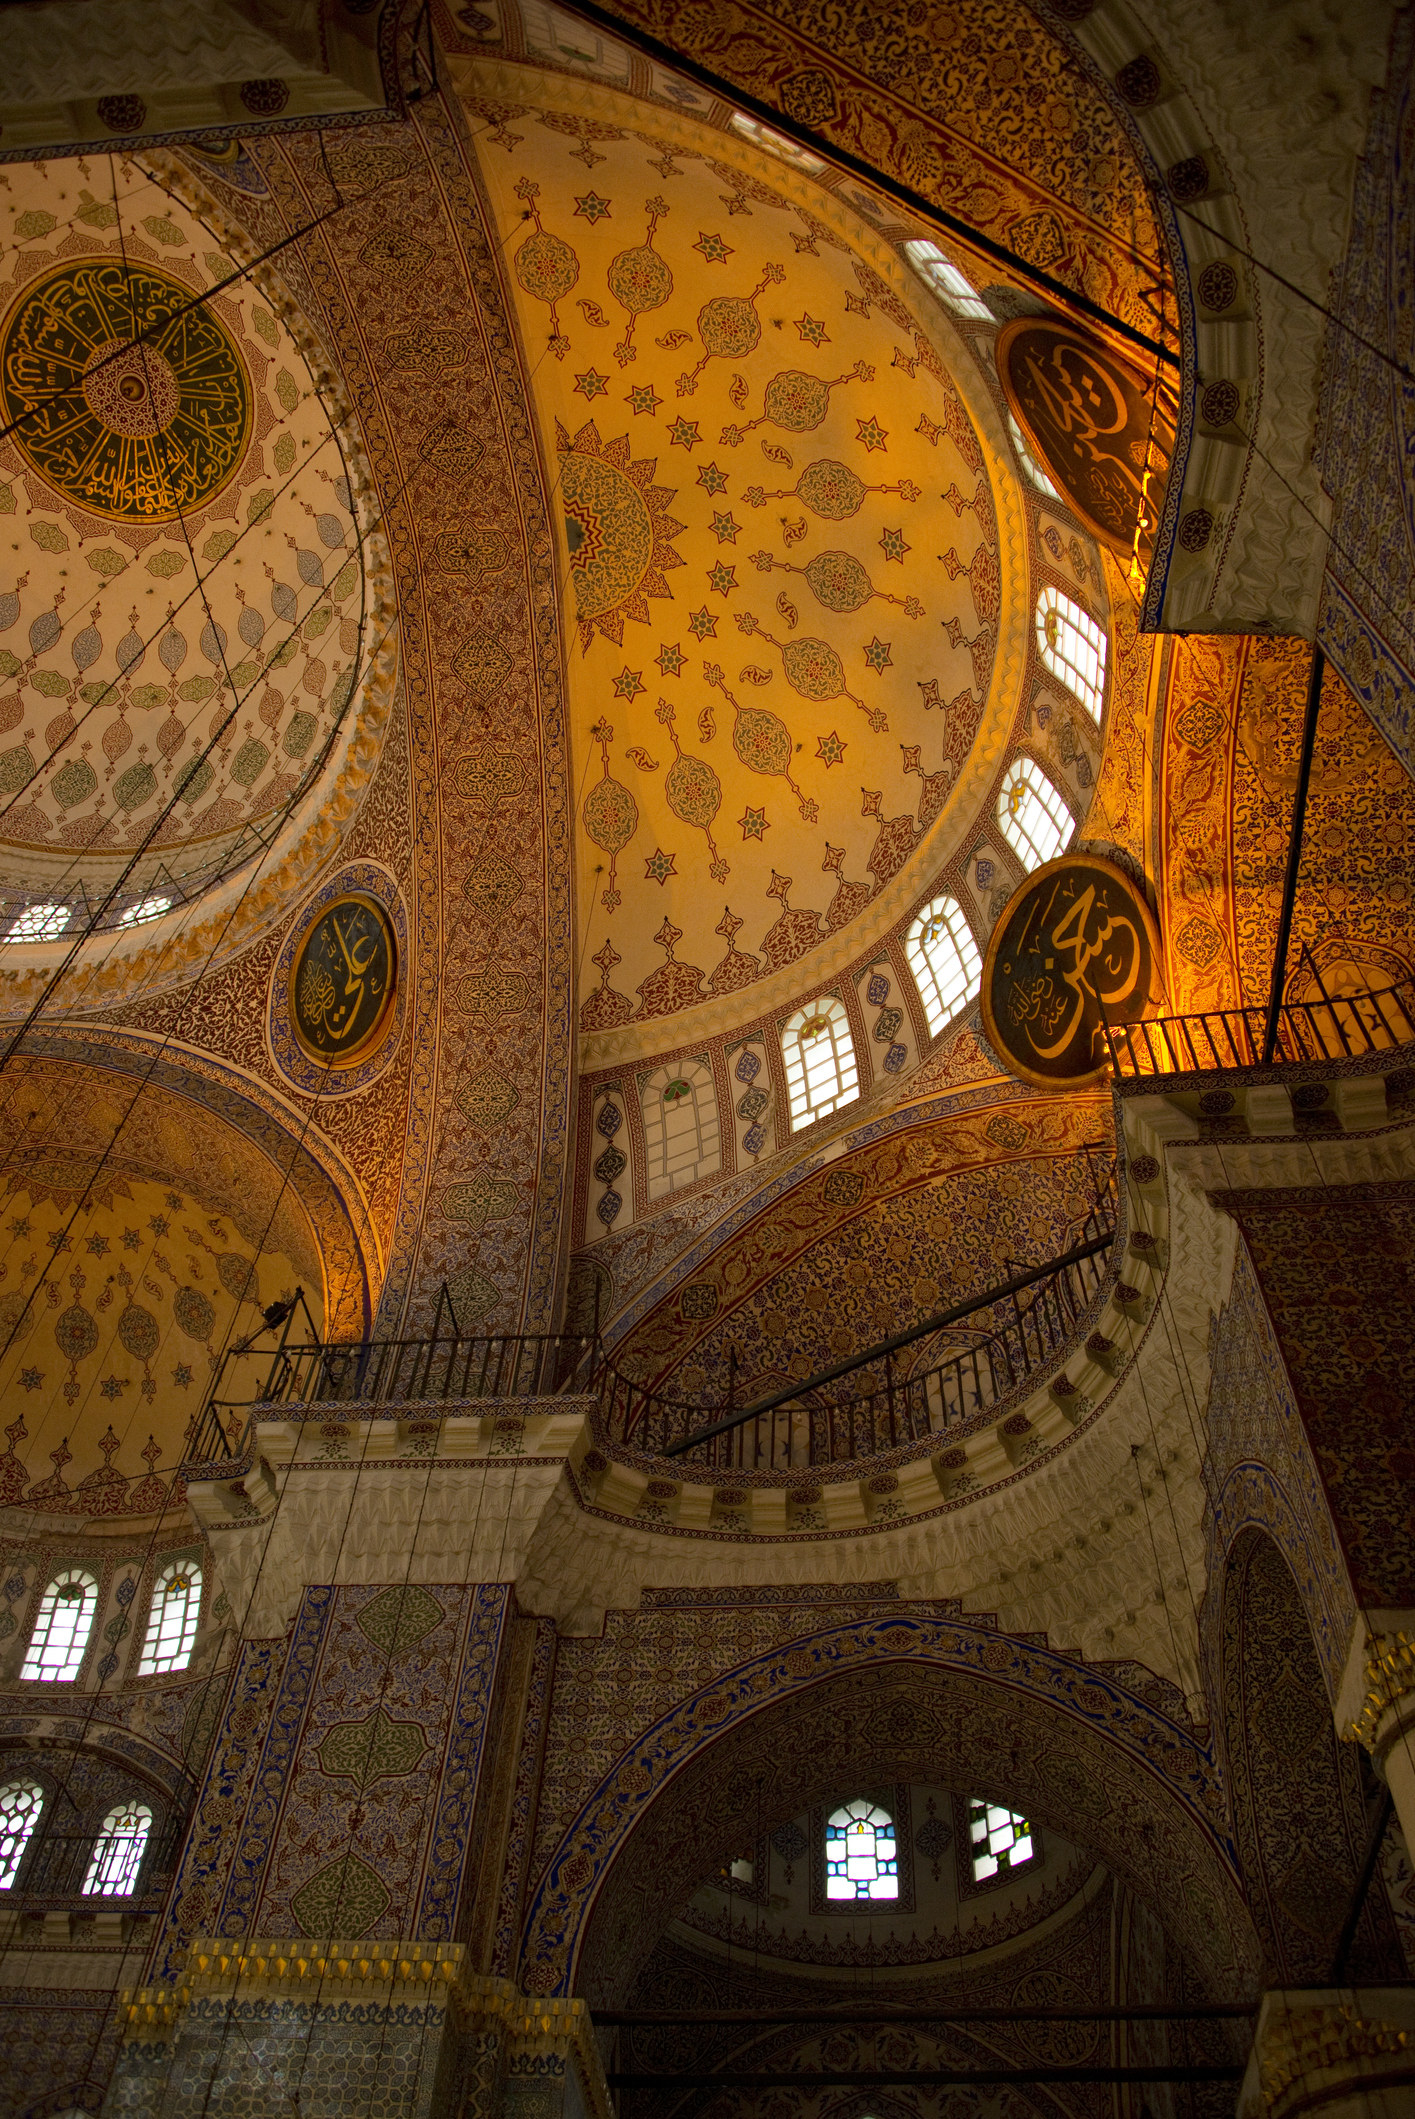 Sunlight coming through the windows of Hagia Sophia